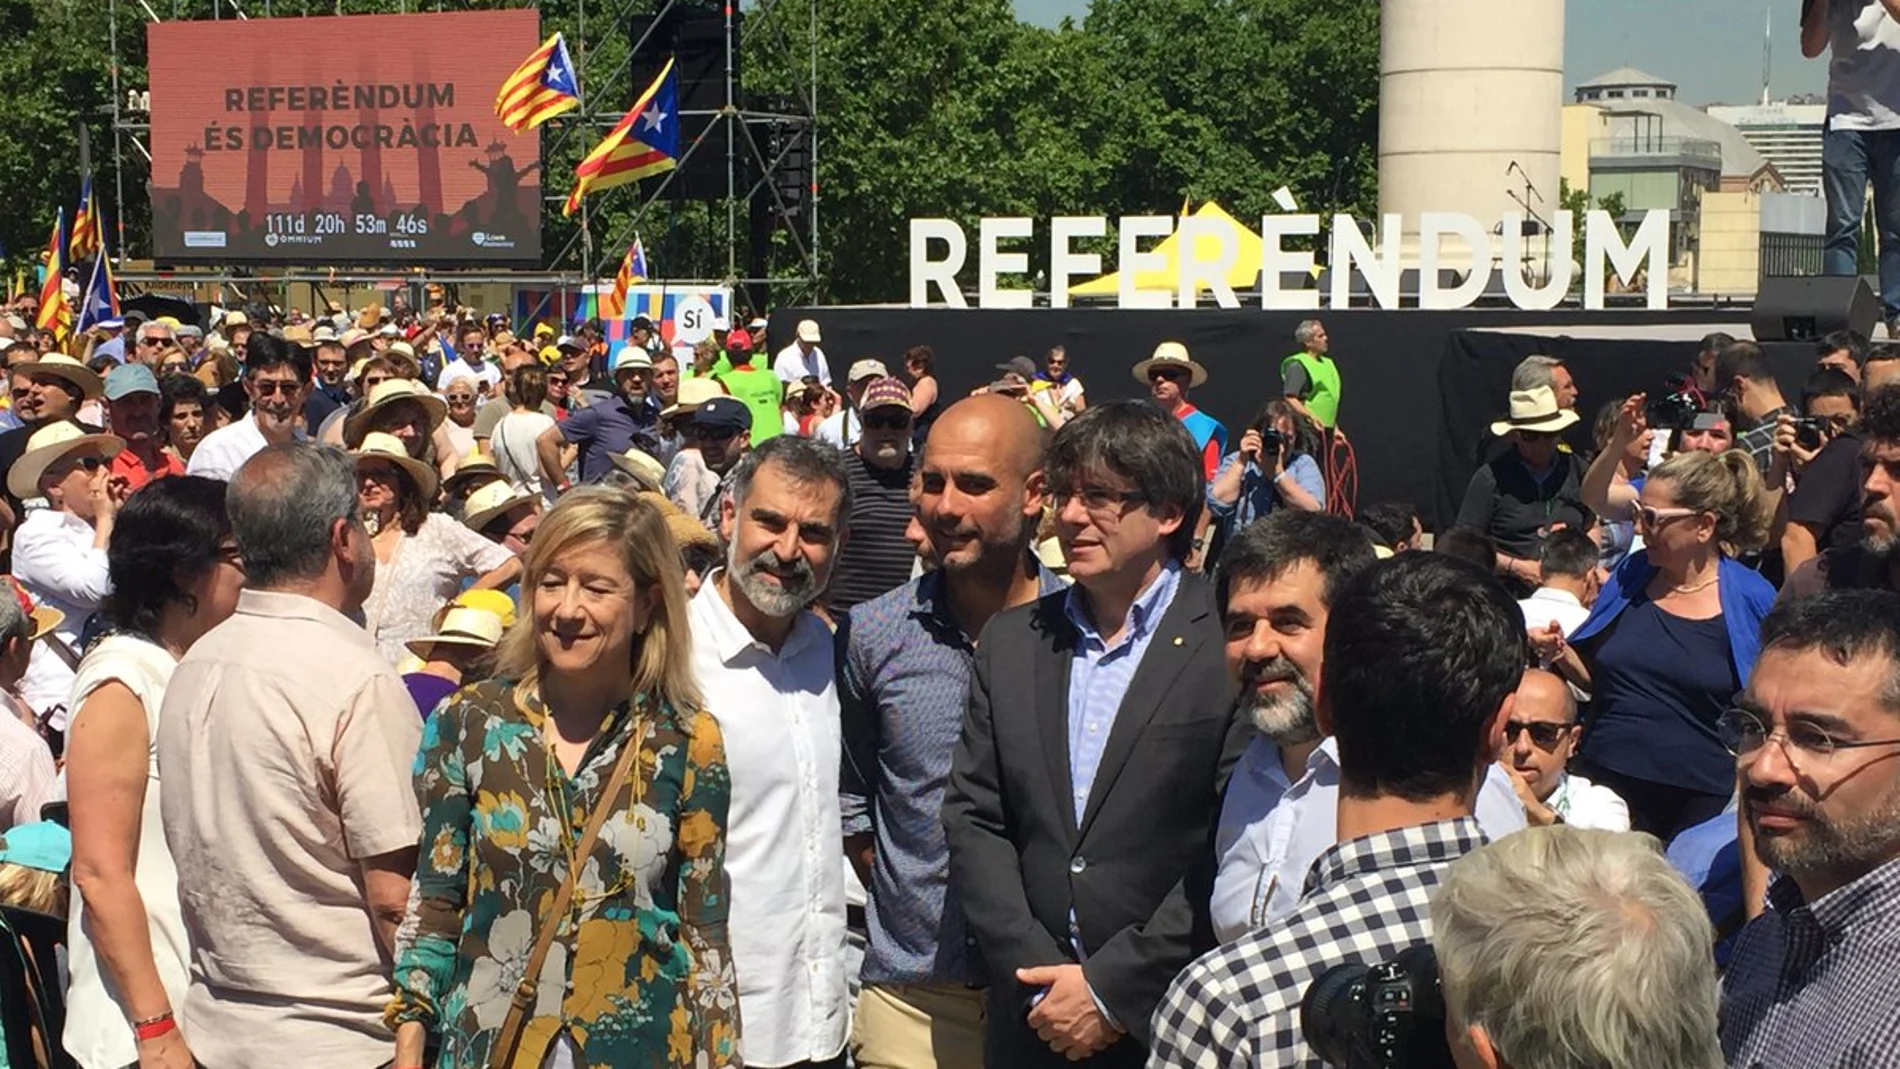 Josep Guardiola y Carles Puigdemont en el acto de apoyo al referéndum